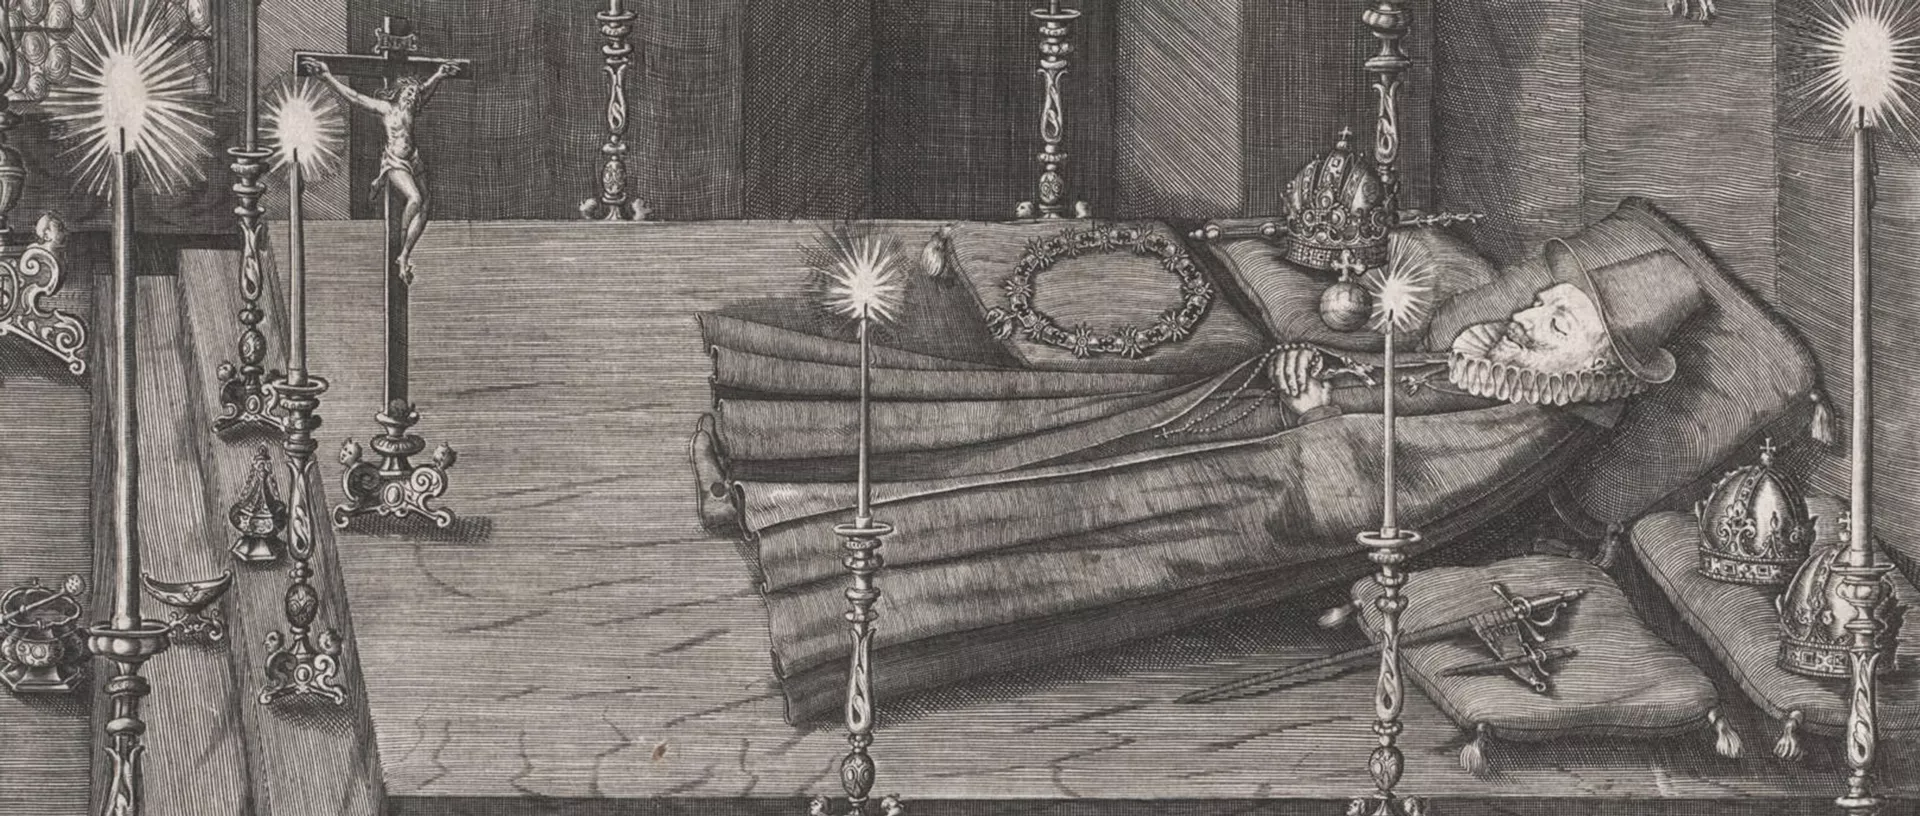 EIne Zeichnung zeigt den verstorbenen und auf einem Bett aufgebahrten Kaiser Ferdinand II.